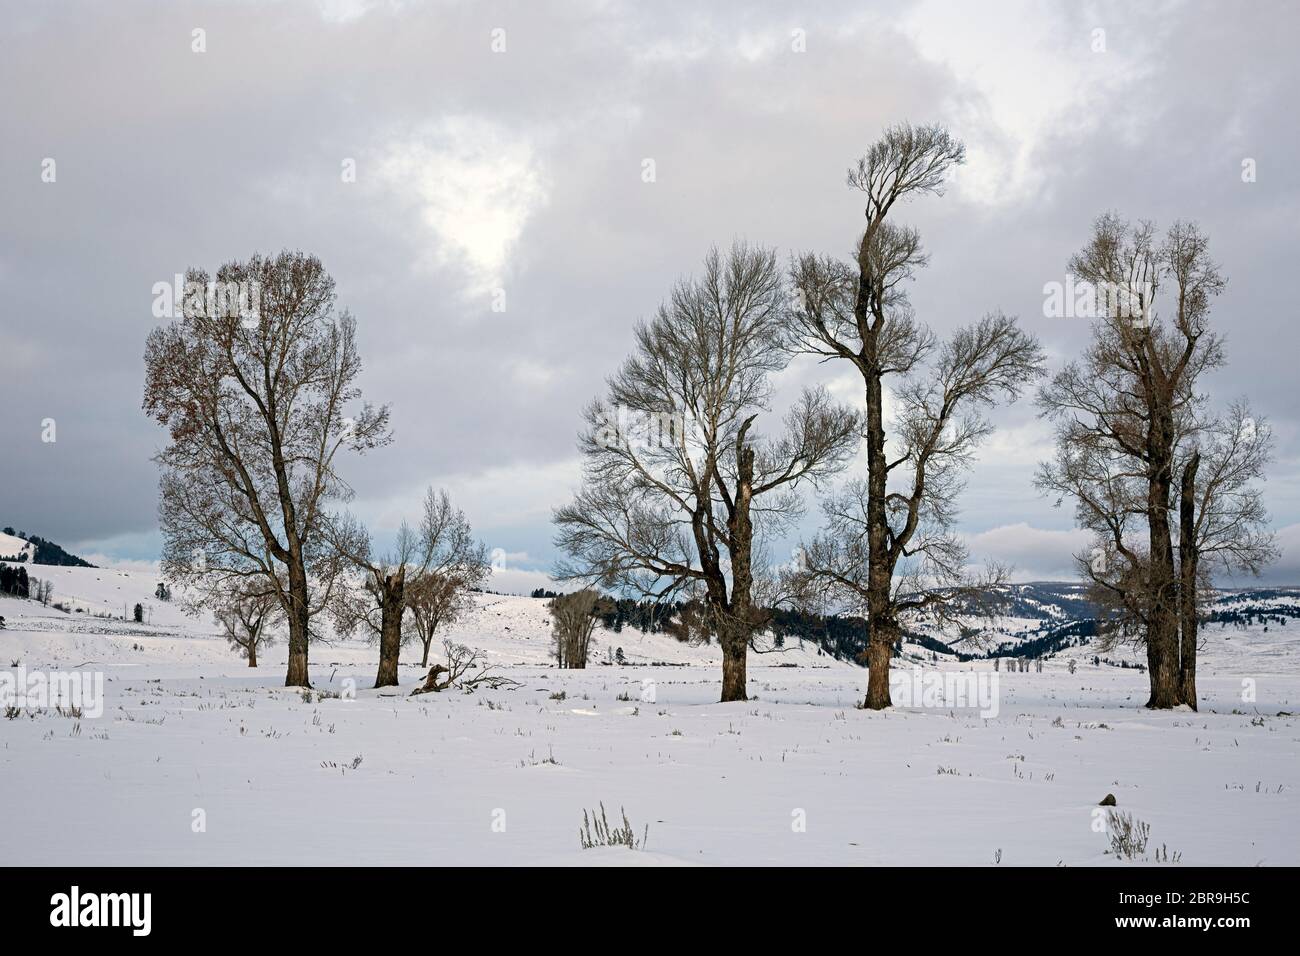 WY04524-00...WYOMING - Dawn dans la neige couverte Lamar Valley près d'un peuplement de cotonwood dans le parc national de Yellowstone. Banque D'Images